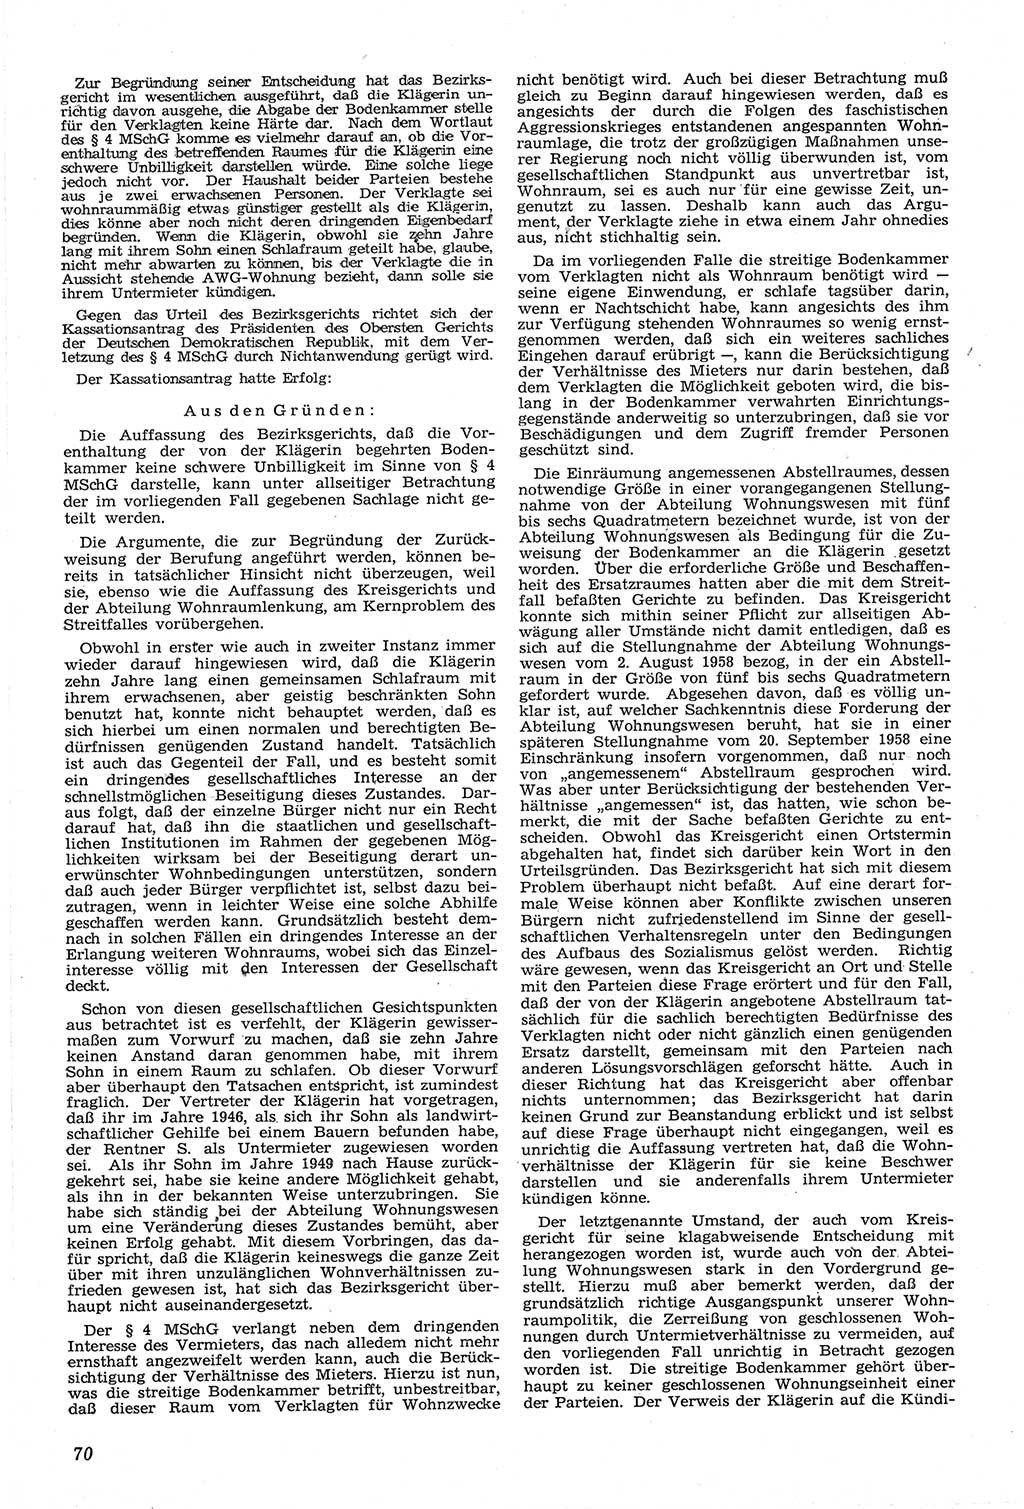 Neue Justiz (NJ), Zeitschrift für Recht und Rechtswissenschaft [Deutsche Demokratische Republik (DDR)], 14. Jahrgang 1960, Seite 70 (NJ DDR 1960, S. 70)